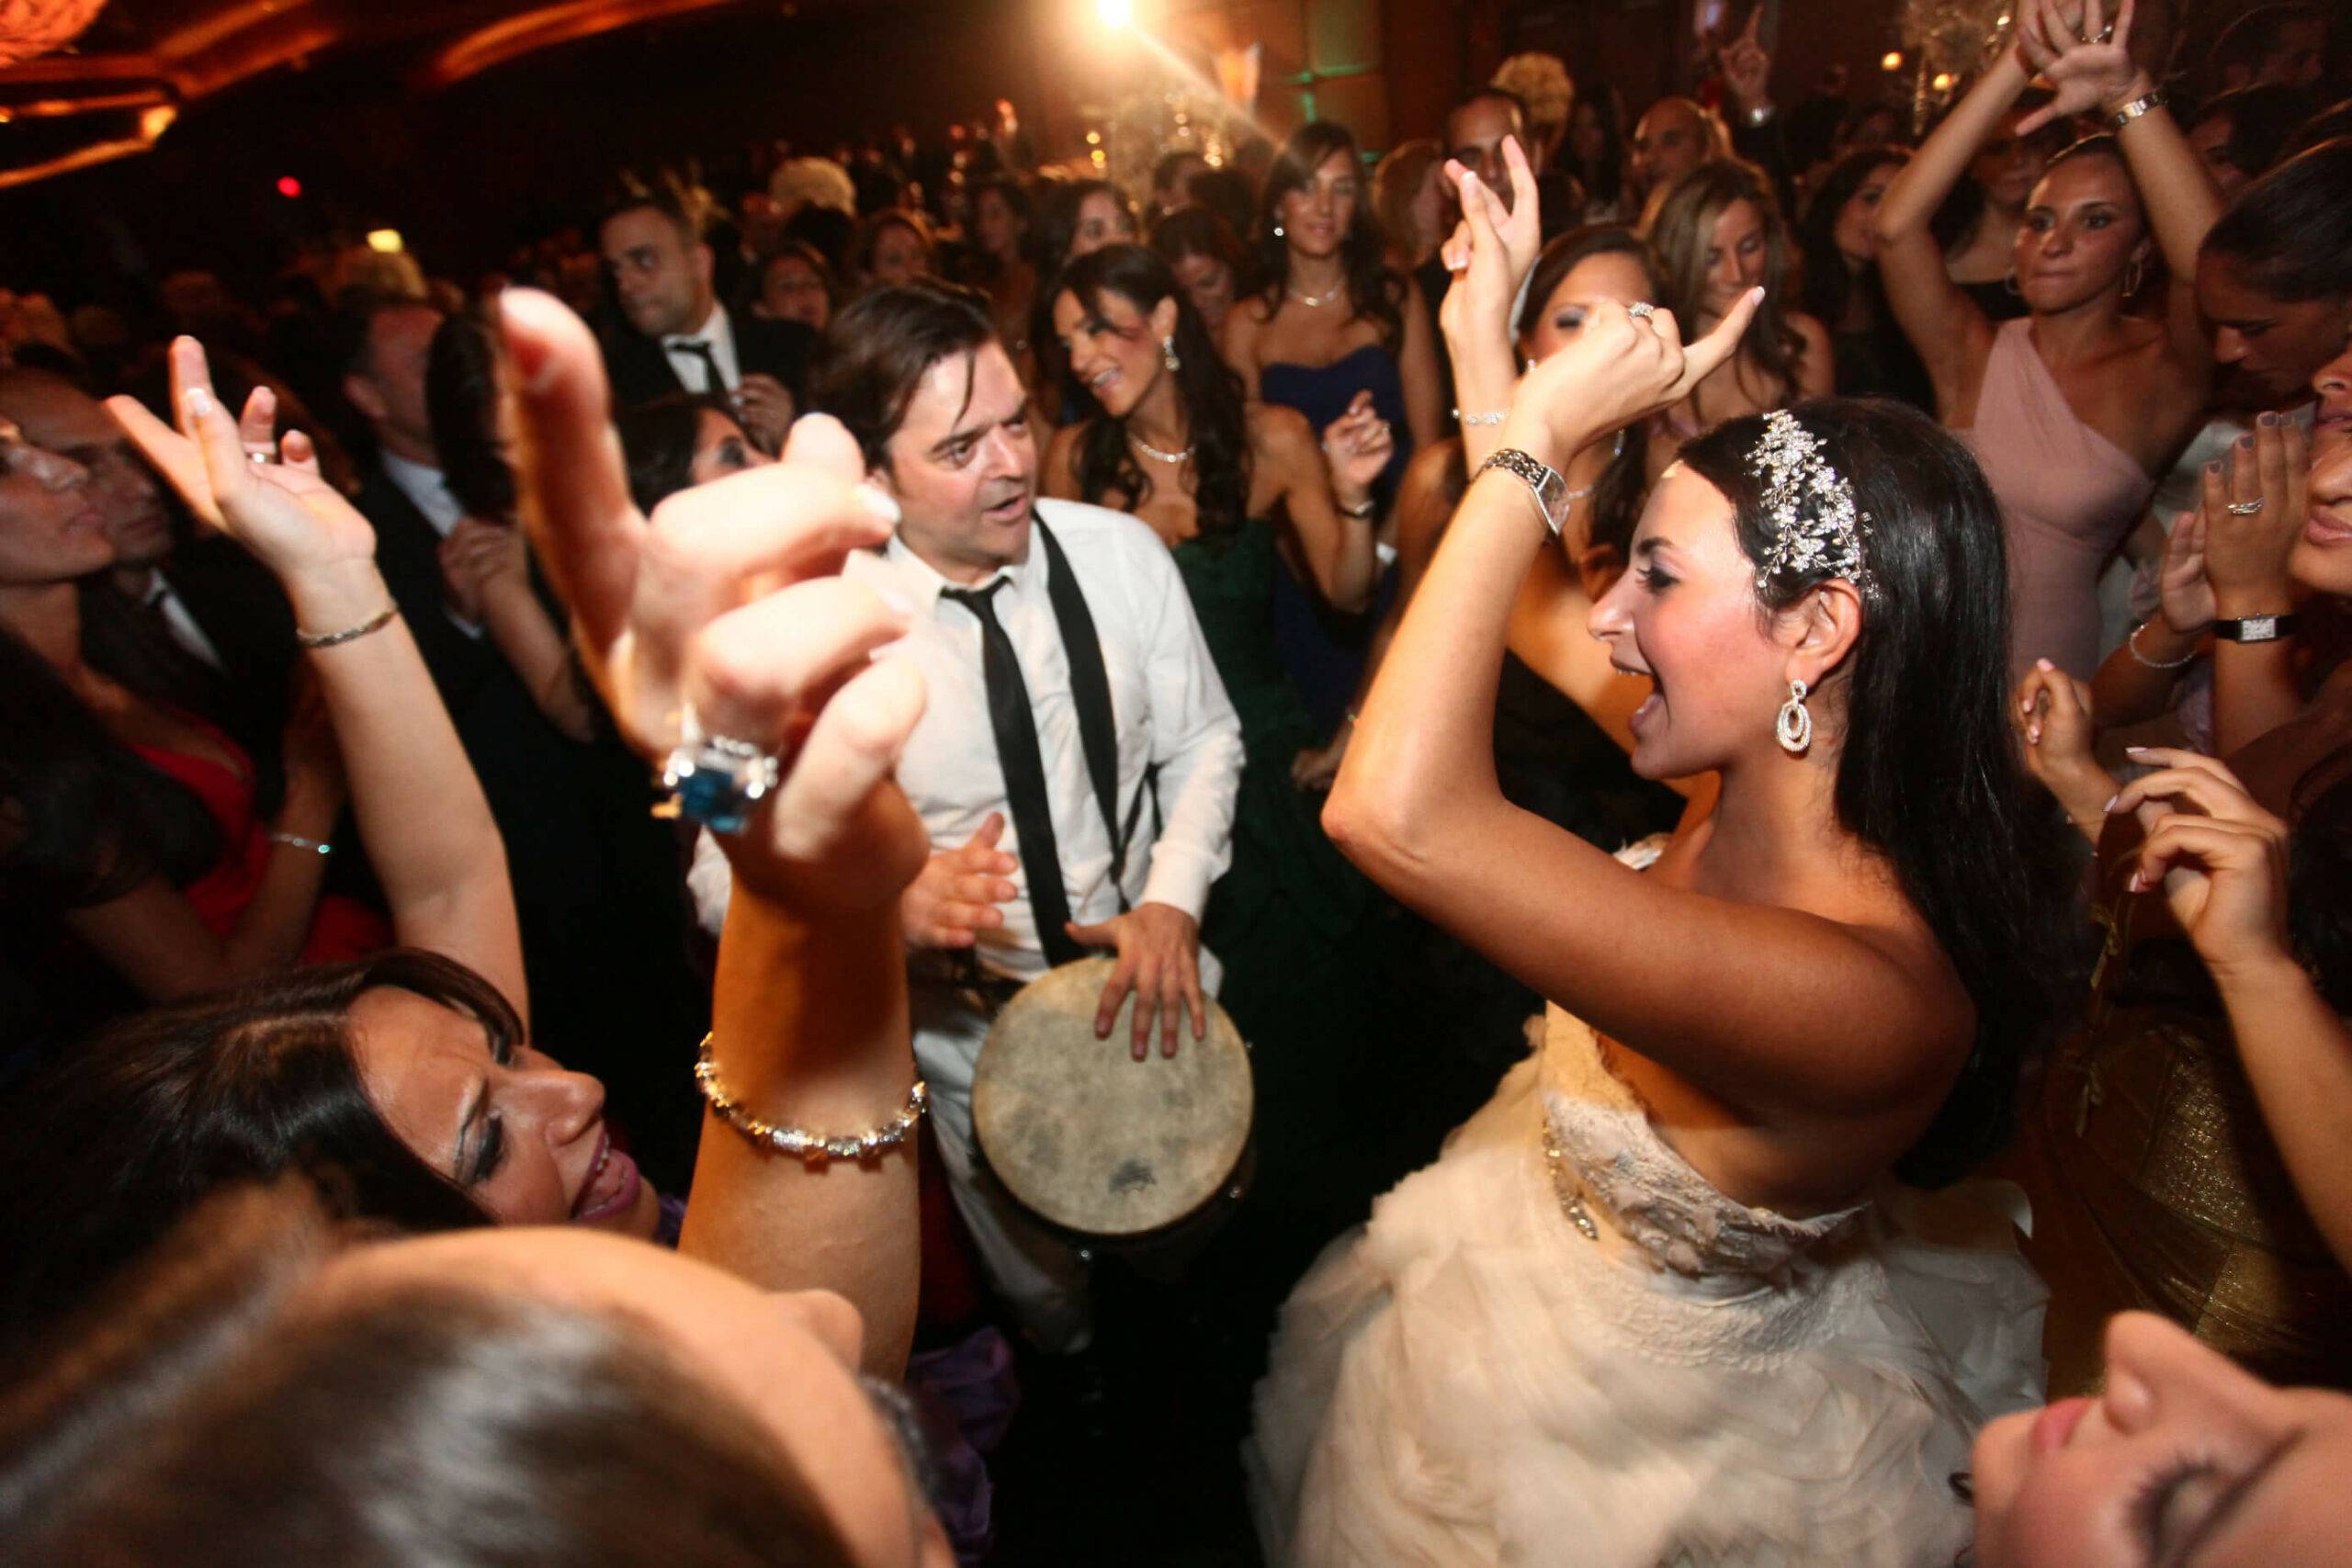 Jeunes mariés partageant un moment énergique, dansant autour d'un percussionniste passionné lors d'un mariage animé par SG Event, le DJ spécialisé à Nice.